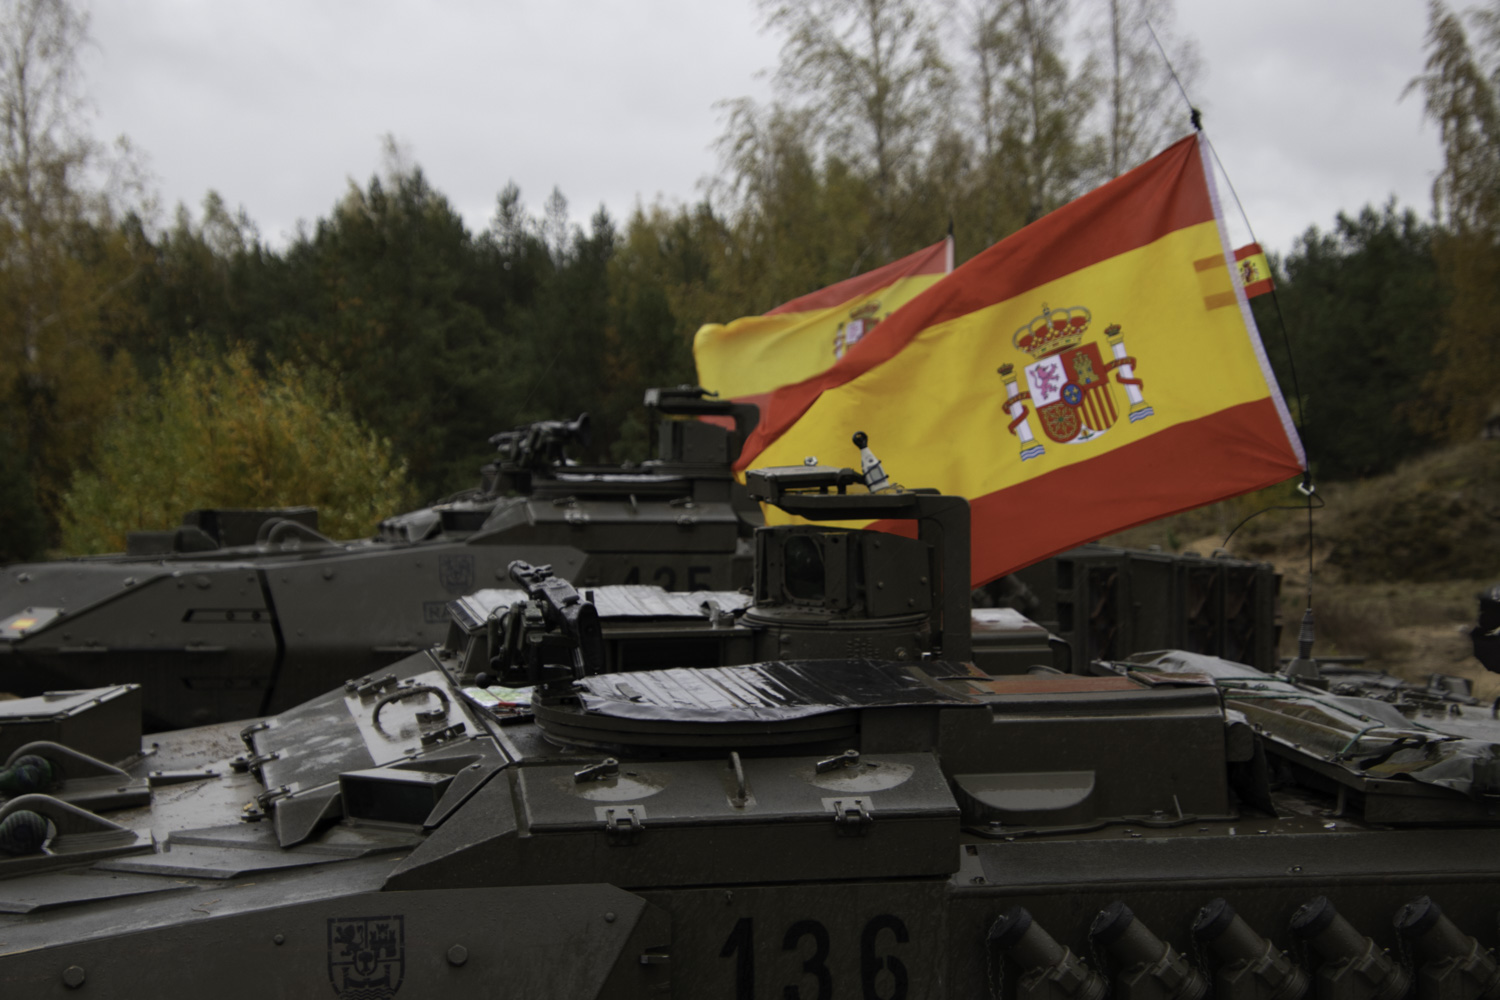 Leopardos españoles se baten con el resto de carros de eFP en el ejercicio ‘Iron Spear’